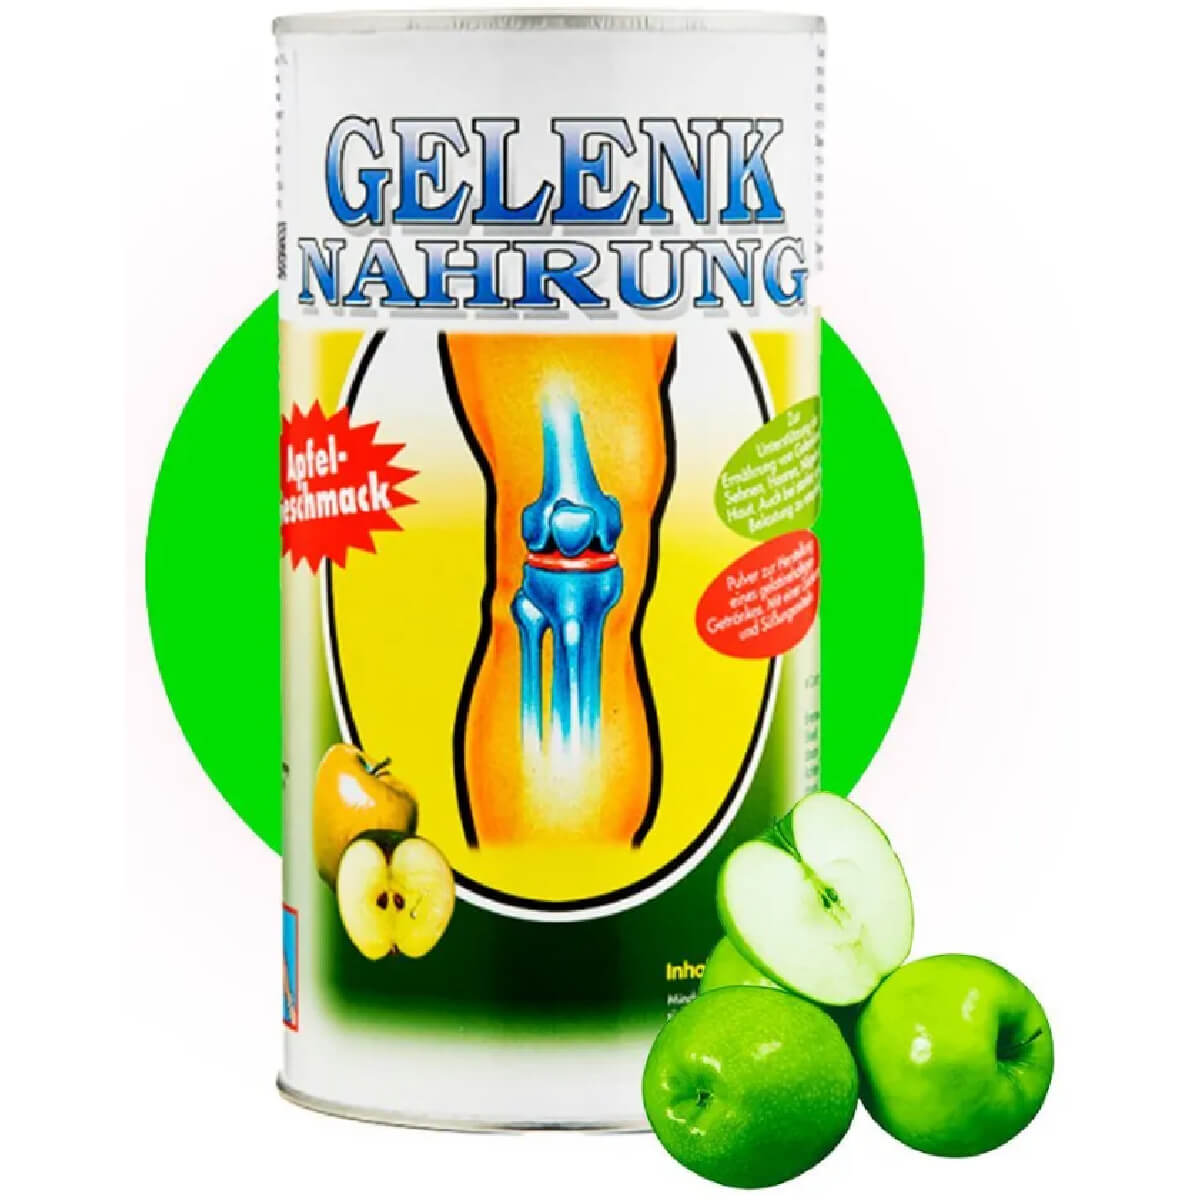 Коллагеновый напиток для суставов и связок Gelenk Nahrung, вкус «Яблоко», 600 гр, Pro Vista AG